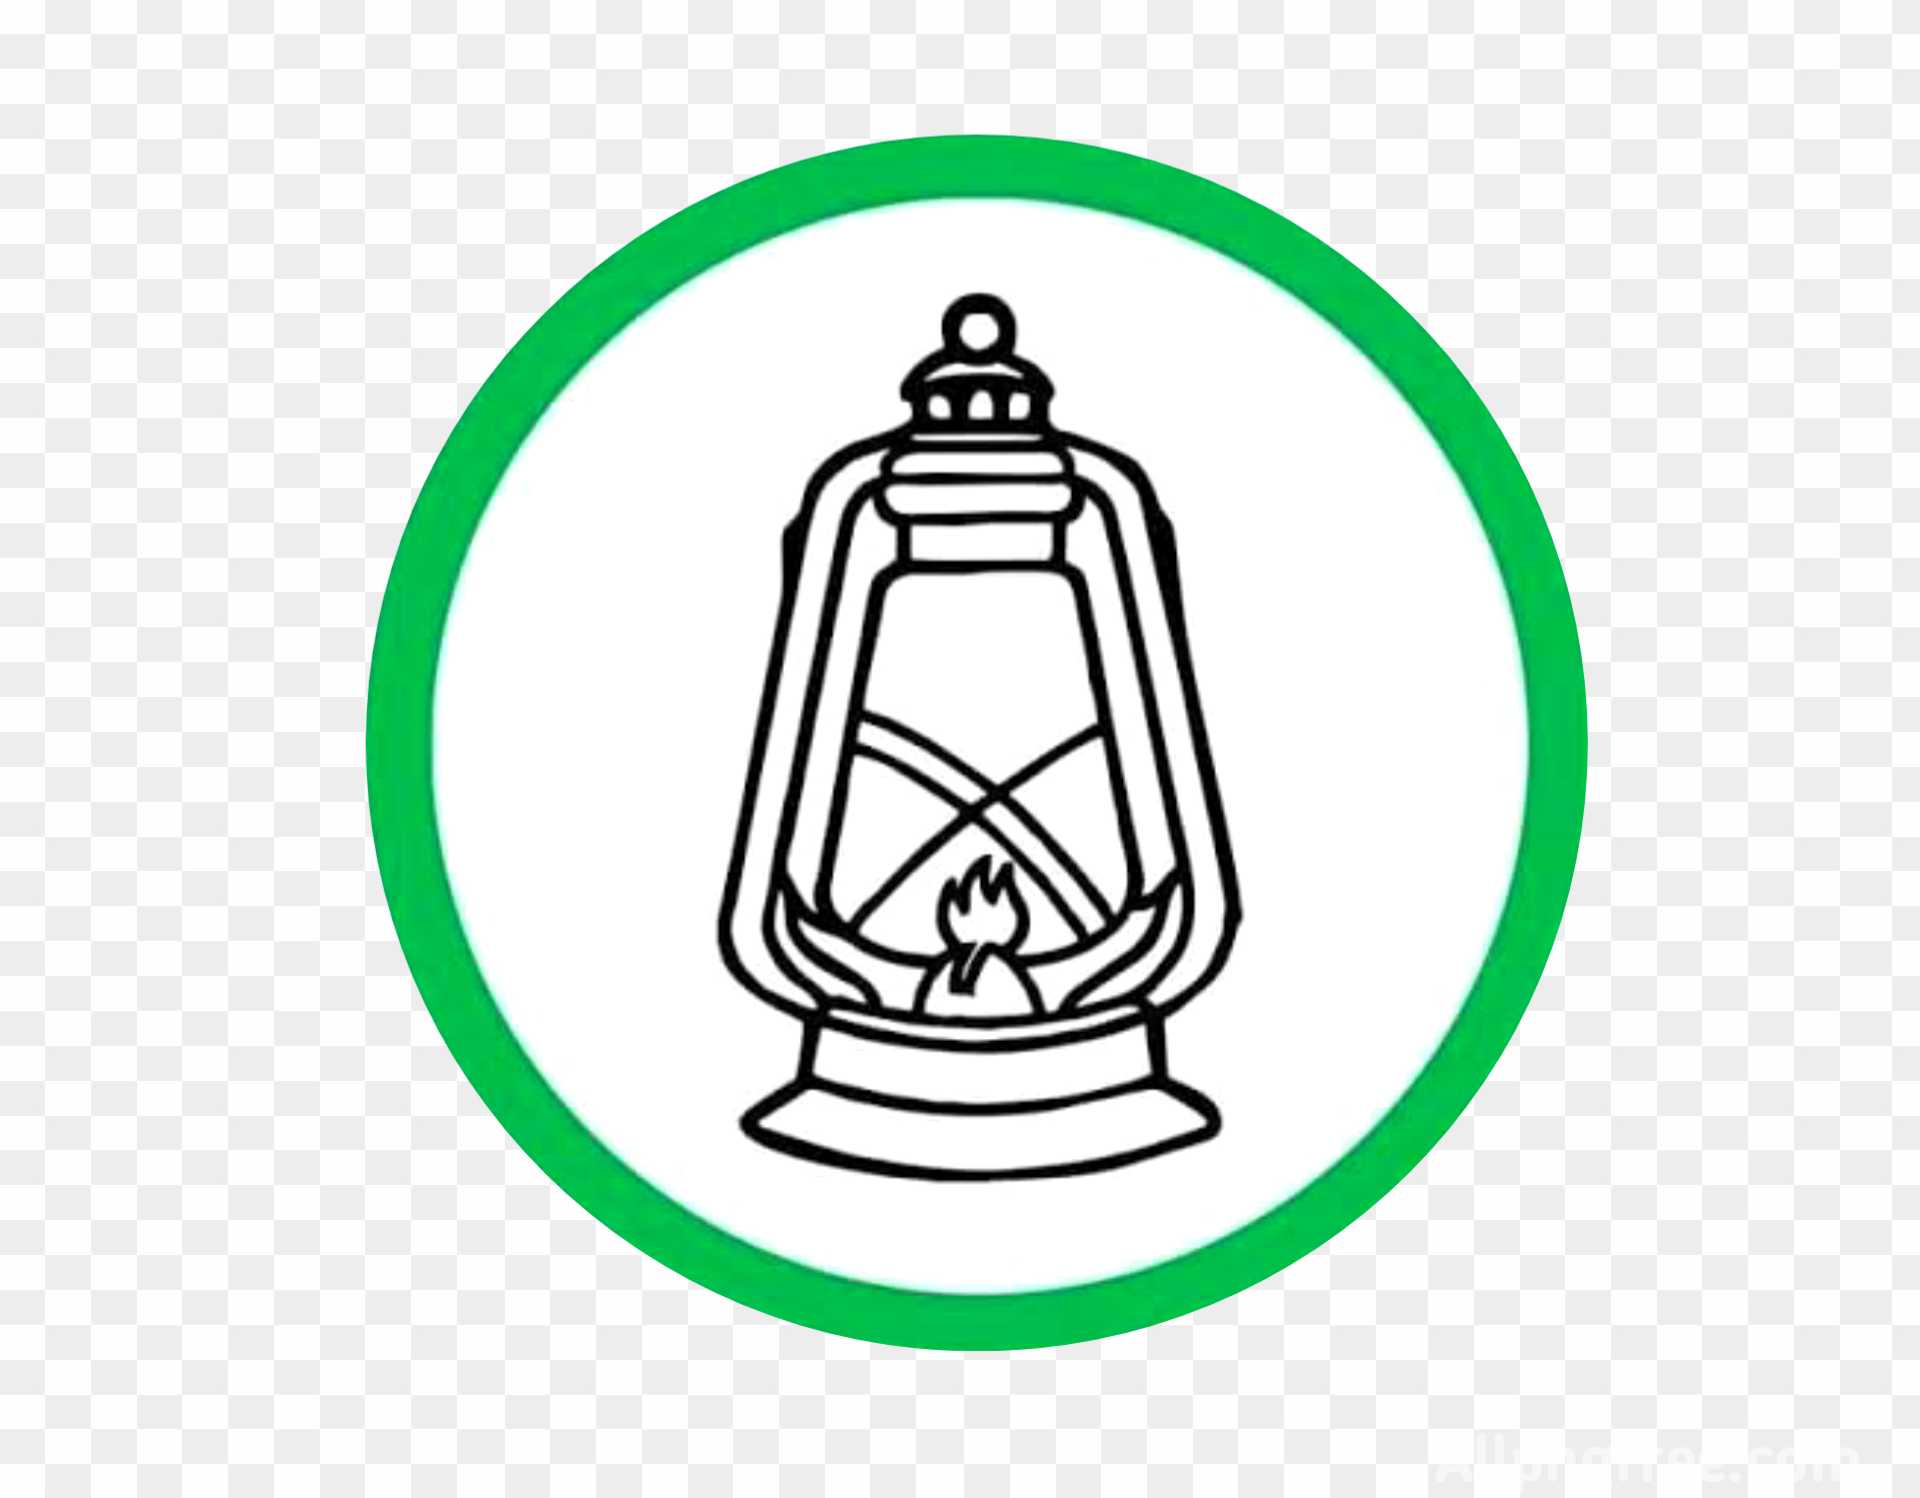 Rashtriya Janata Dal logo png images